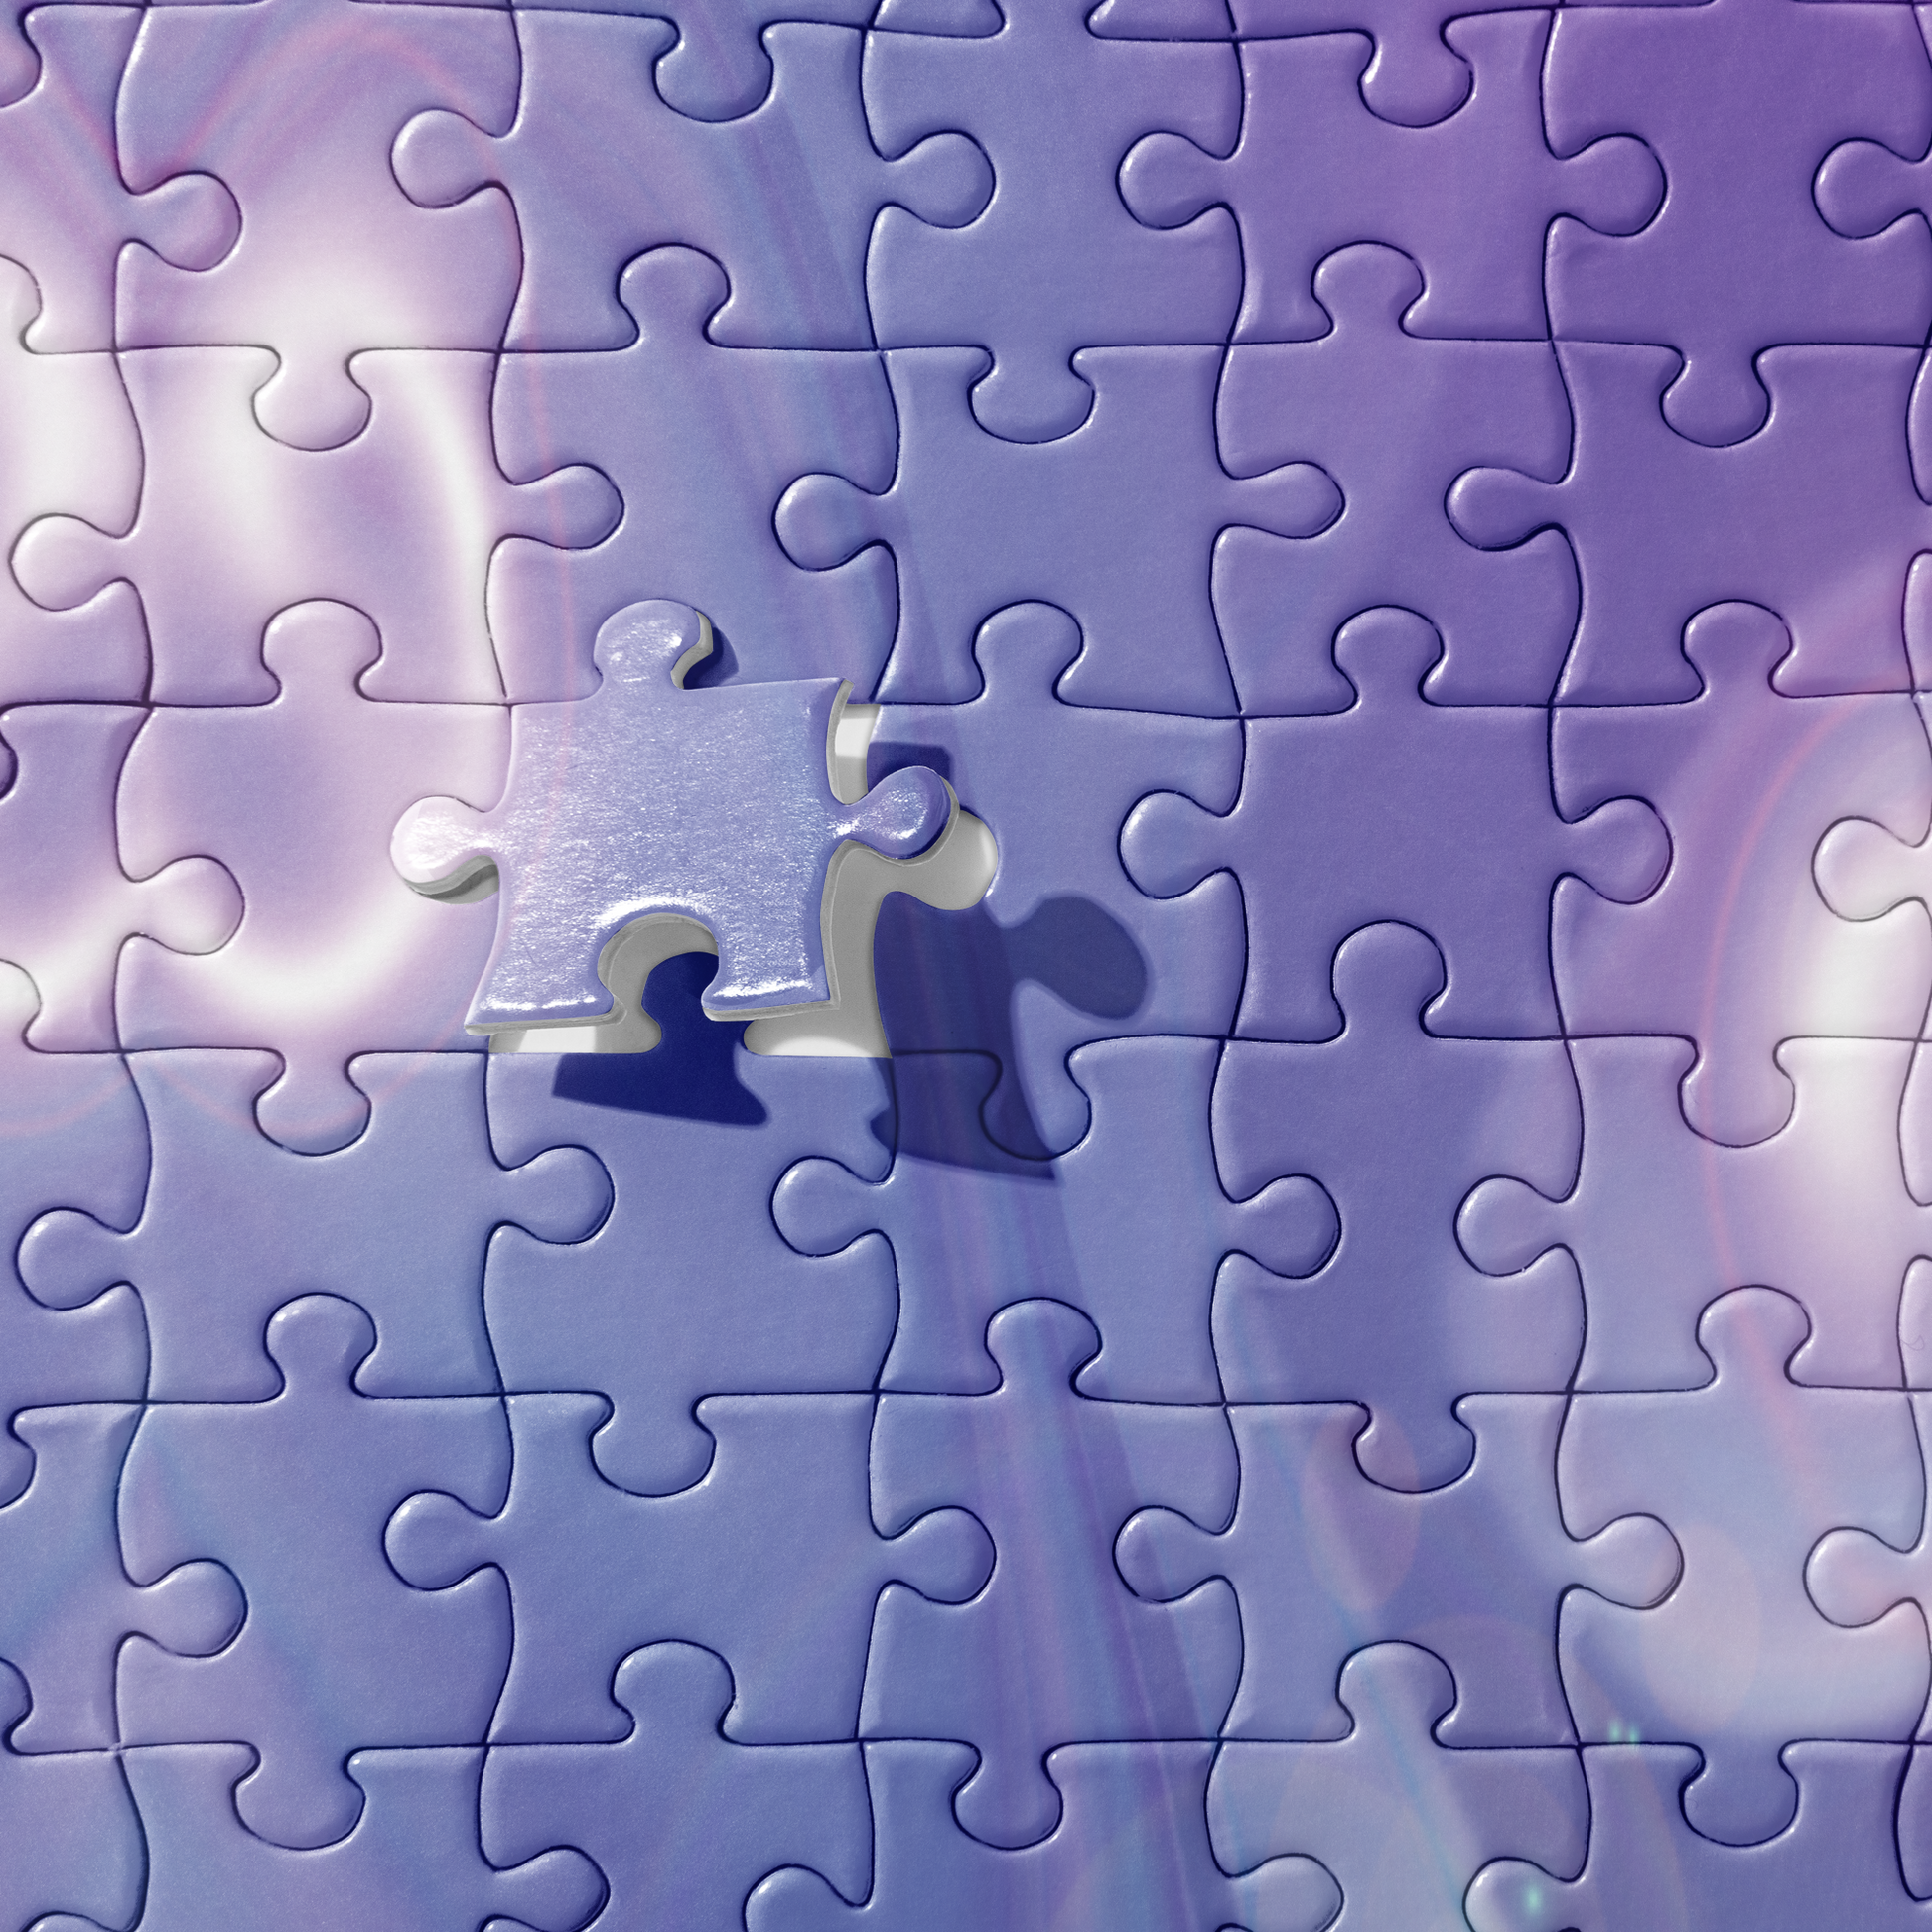 Hidden Reservoir Abstract Art BeSculpt Kids Jigsaw Puzzle  # 4 Image 252/520 Pieces